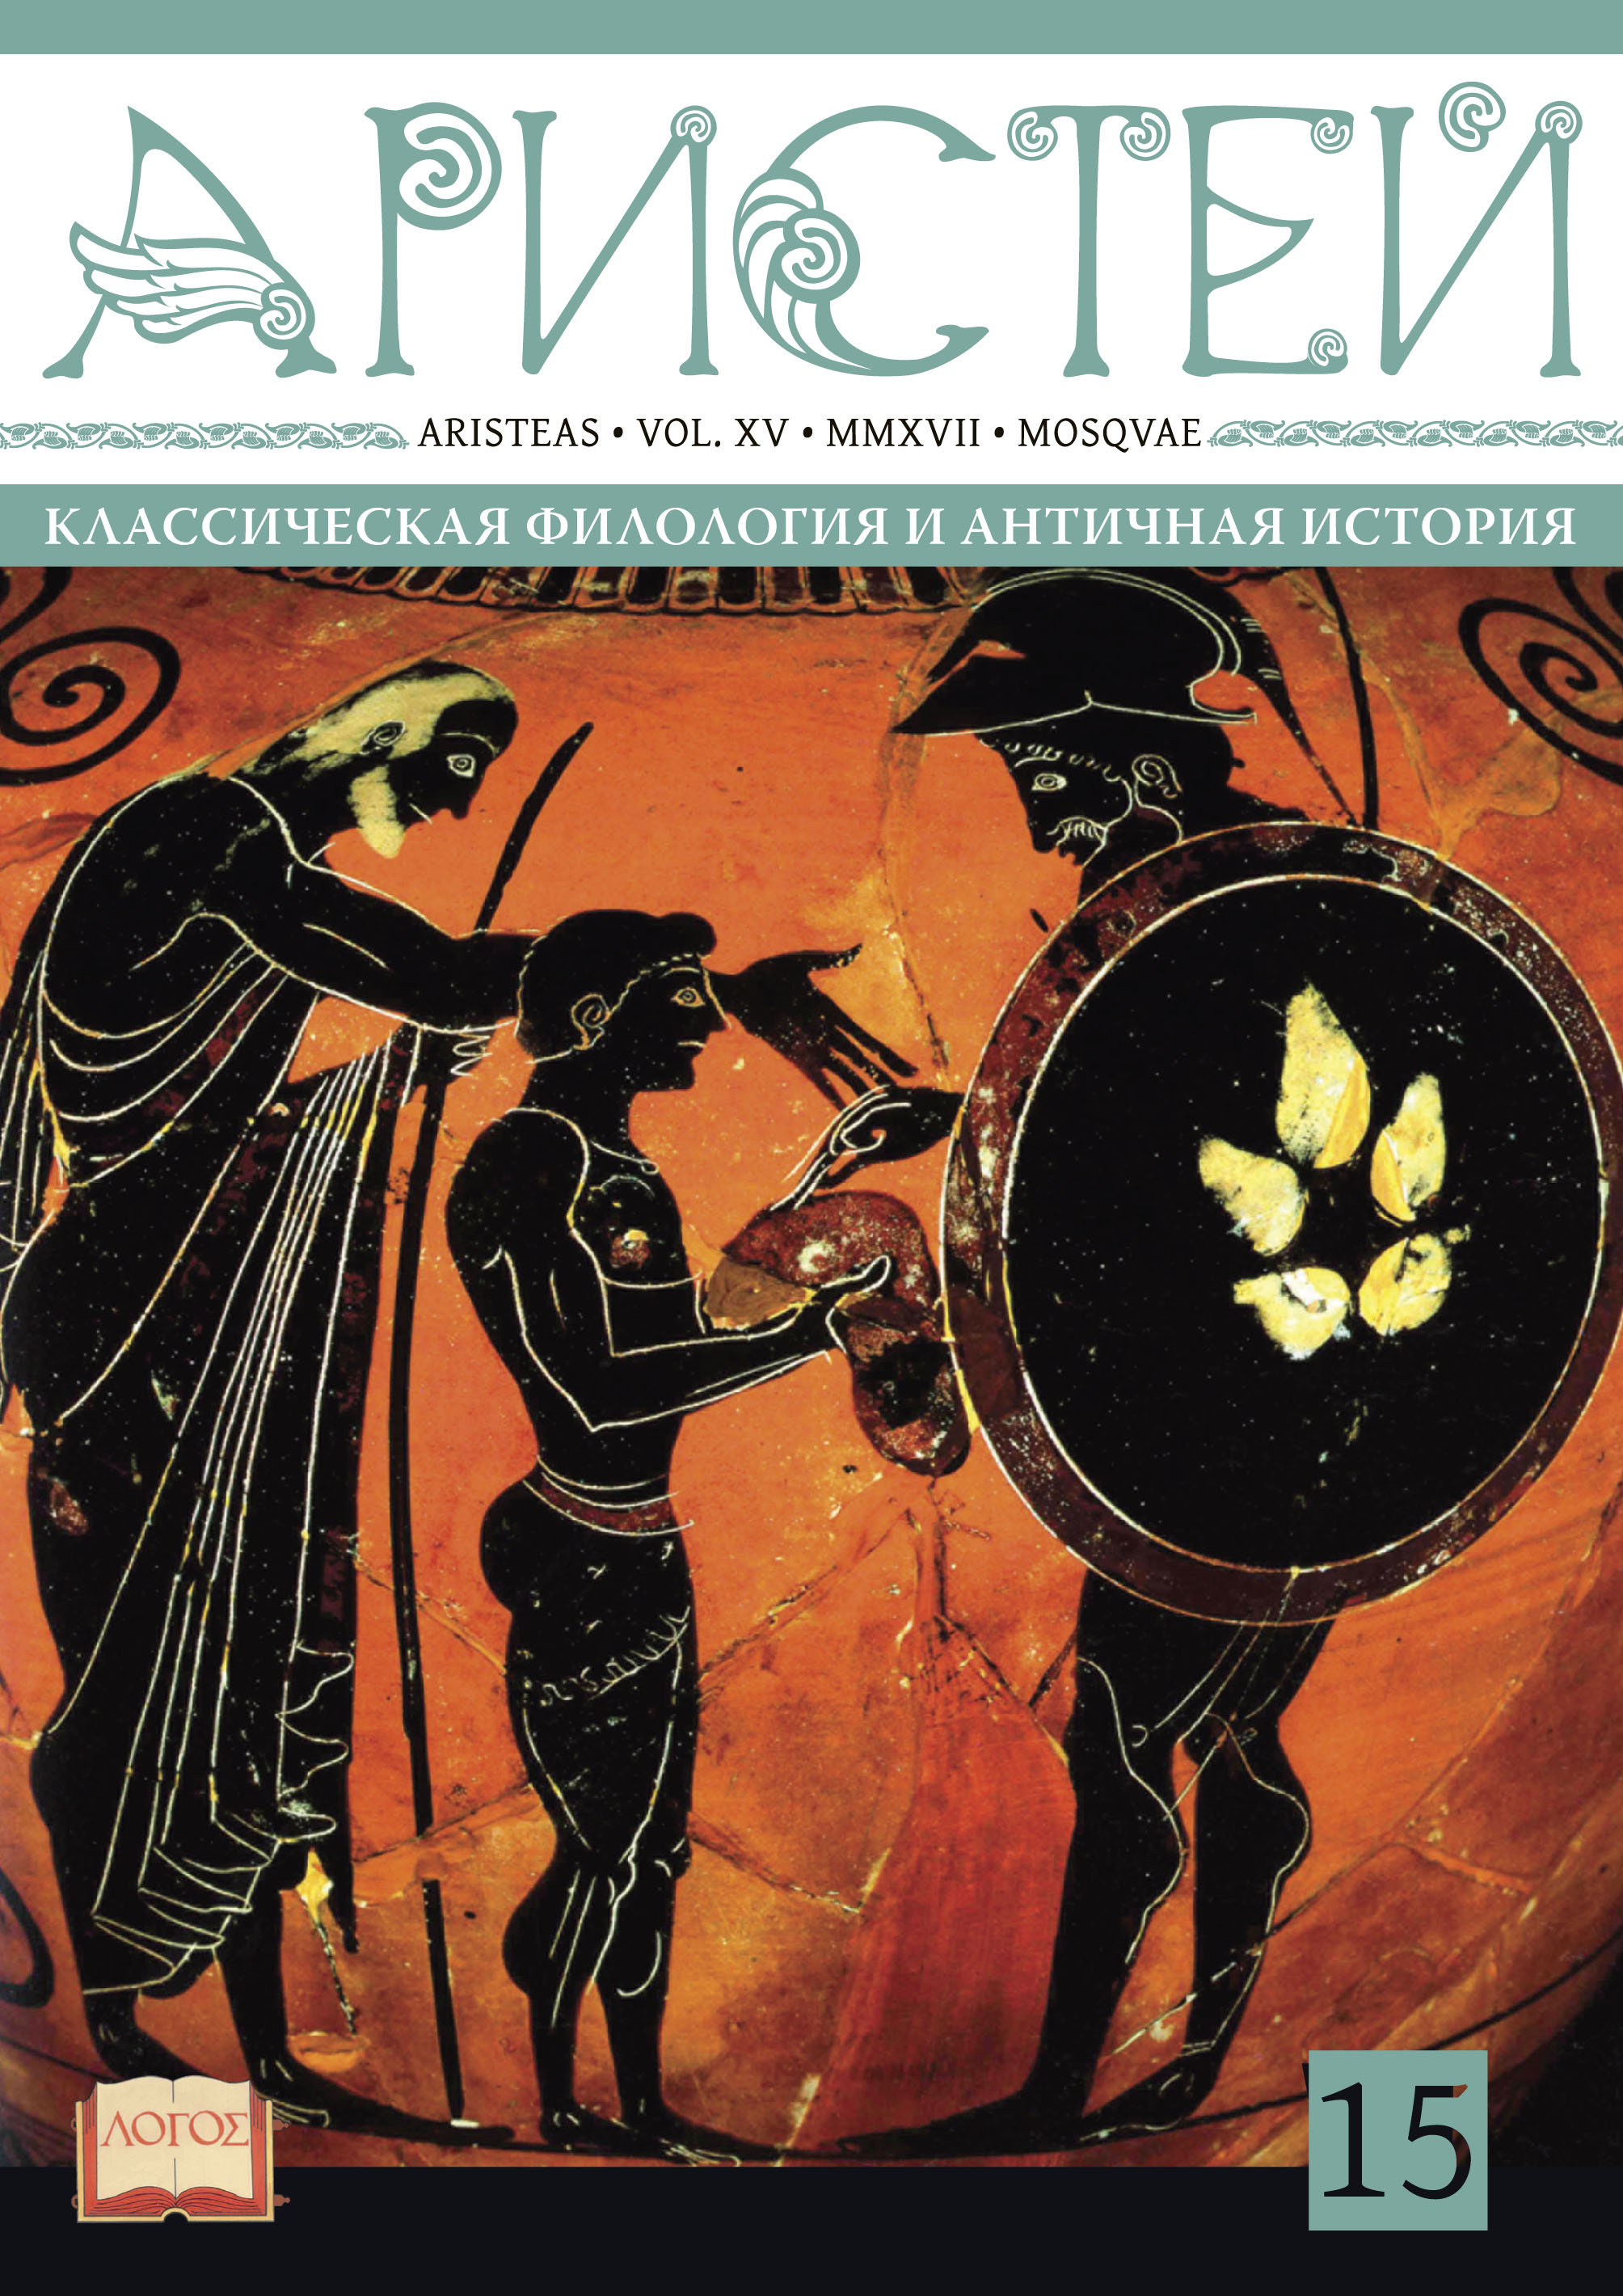 Журнал Аристей: вестник классической филологии и античной истории. Том XV